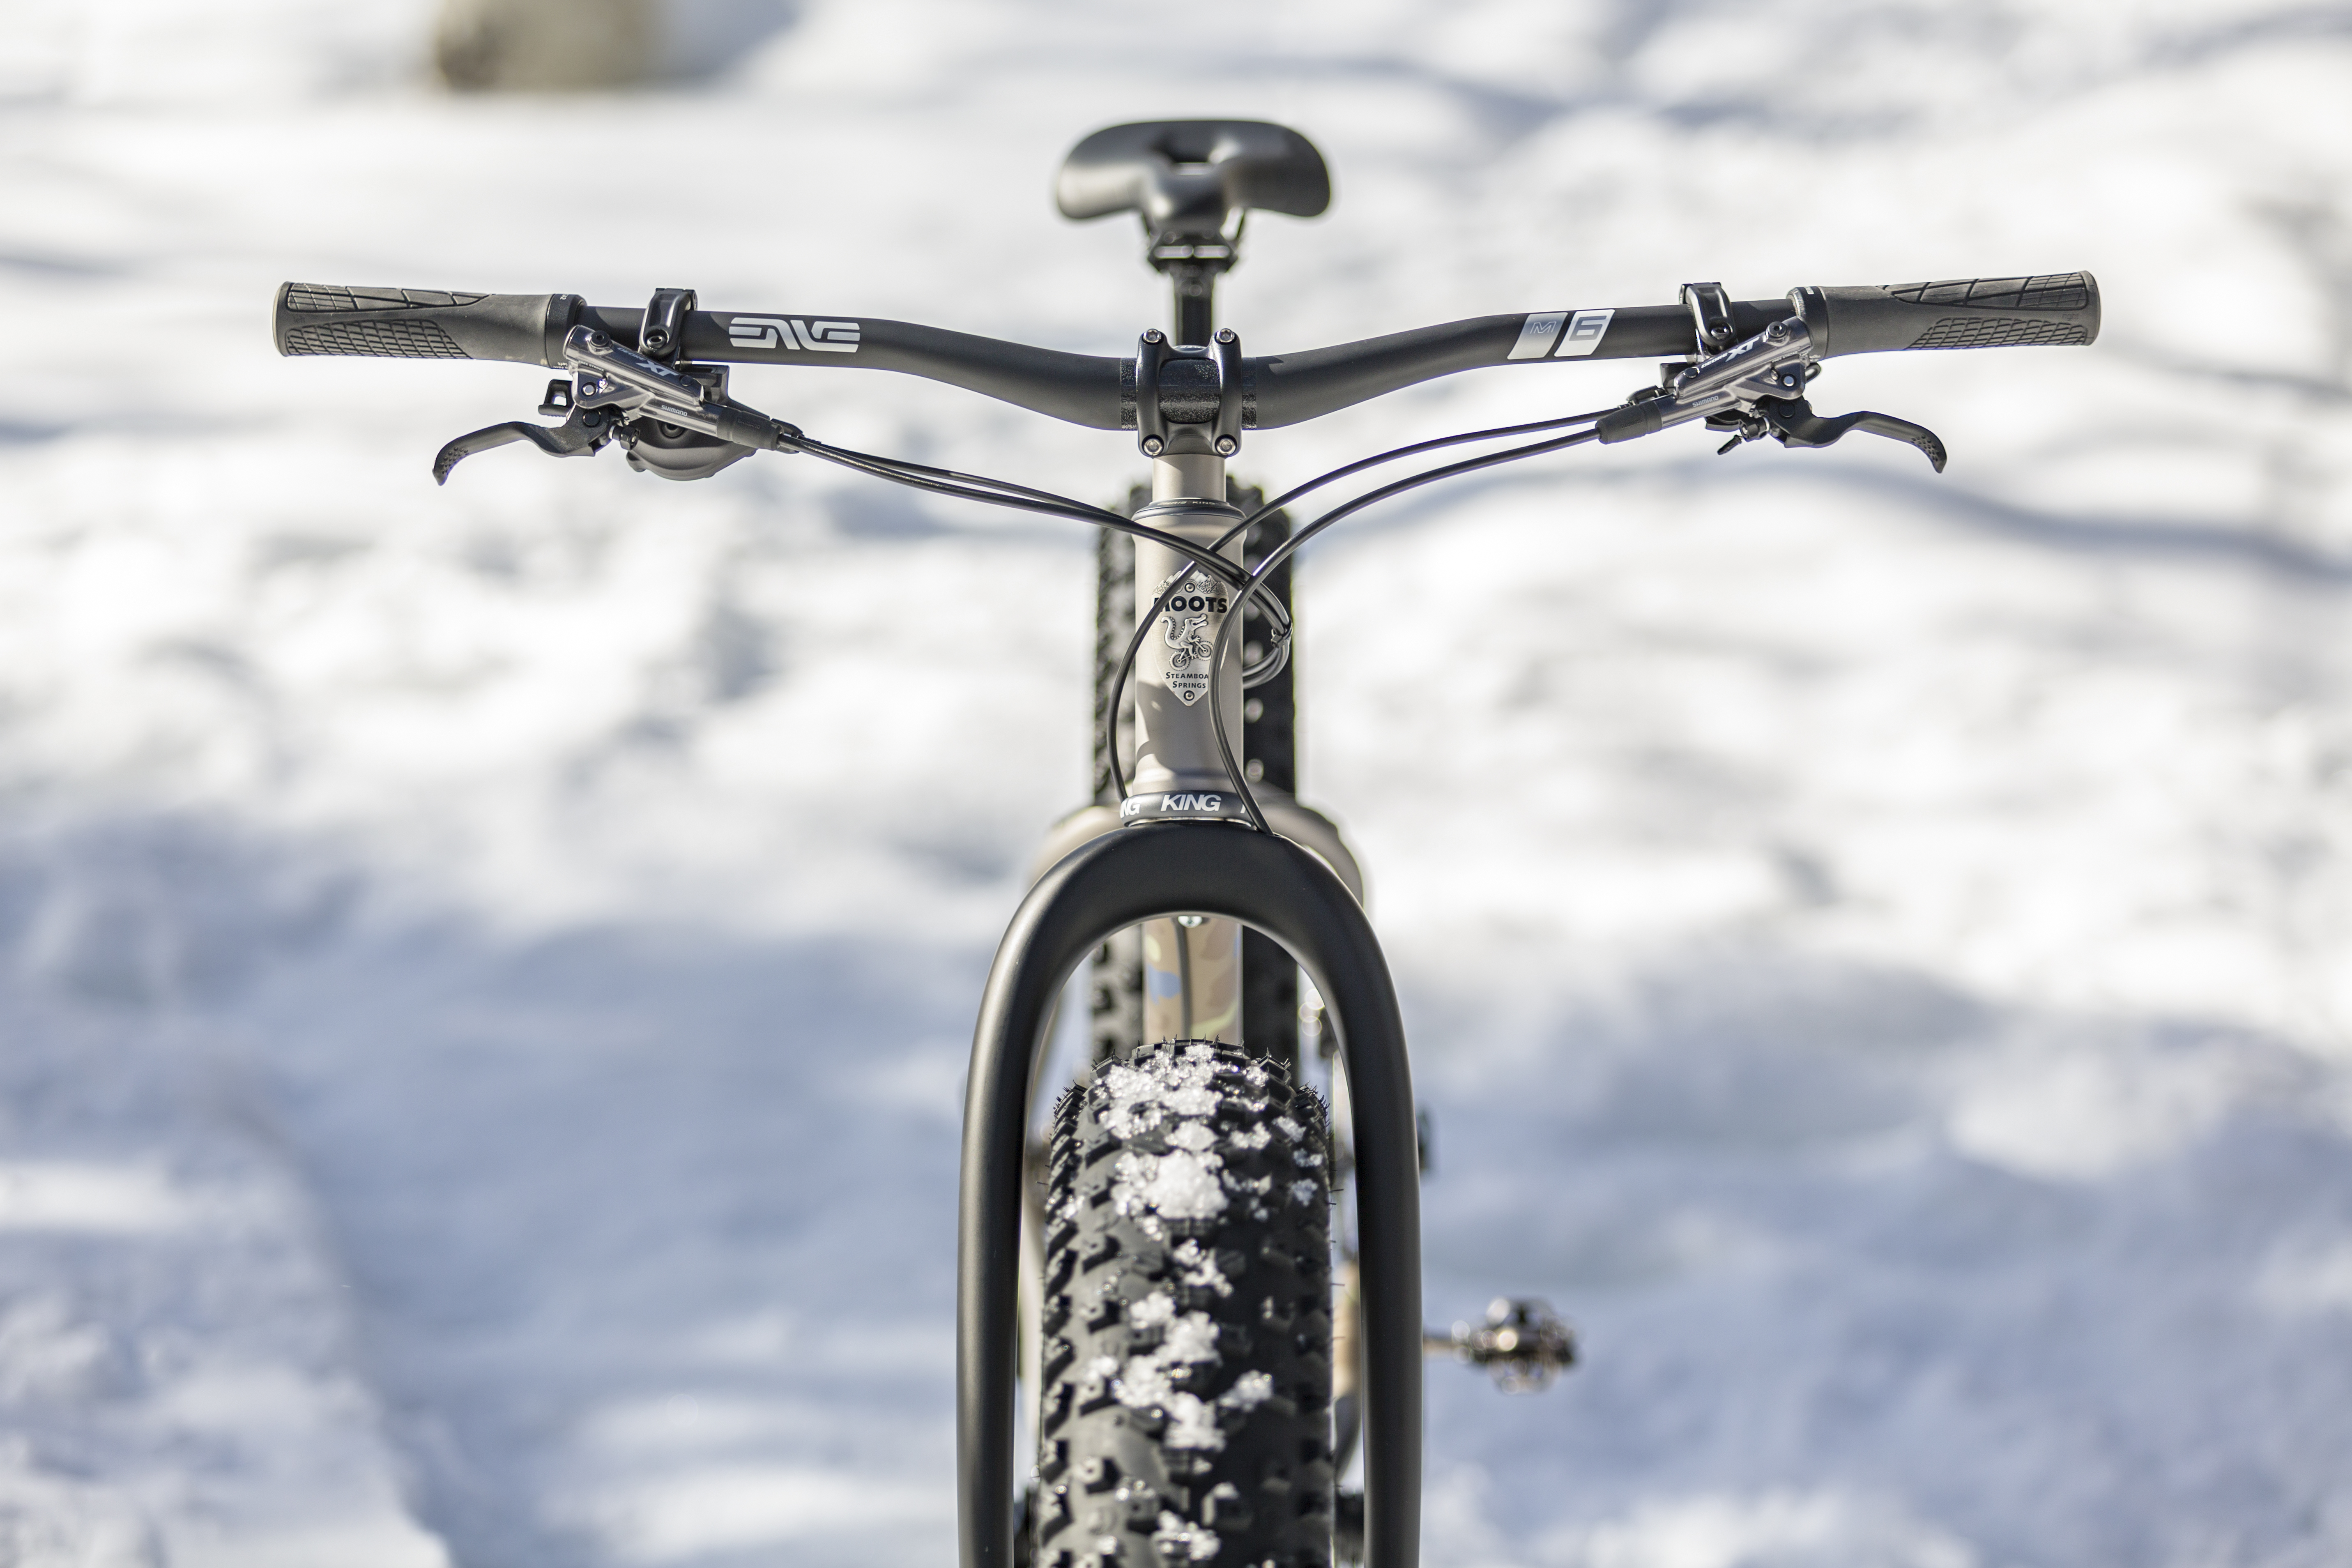 Moots Forager titanium fat bike gets big 27.5x4.5 snow tires